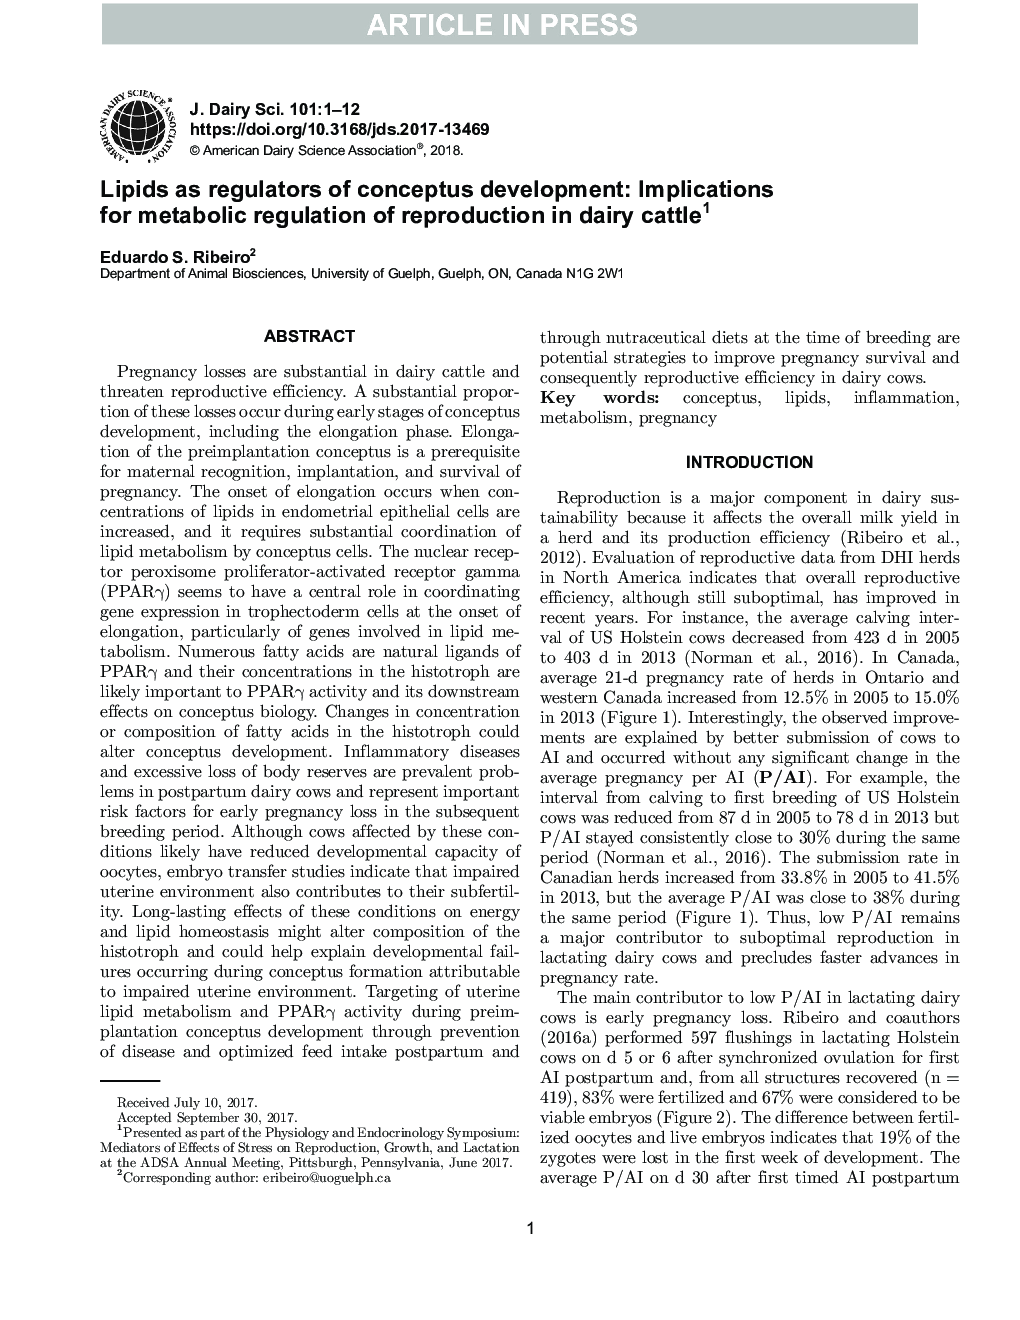 بررسی سمپوزیوم: لیپید ها به عنوان تنظیم کننده های توسعه مفهوم: پیامدهای تنظیم متابولیسم تولید مثل در گاوهای شیری 1 